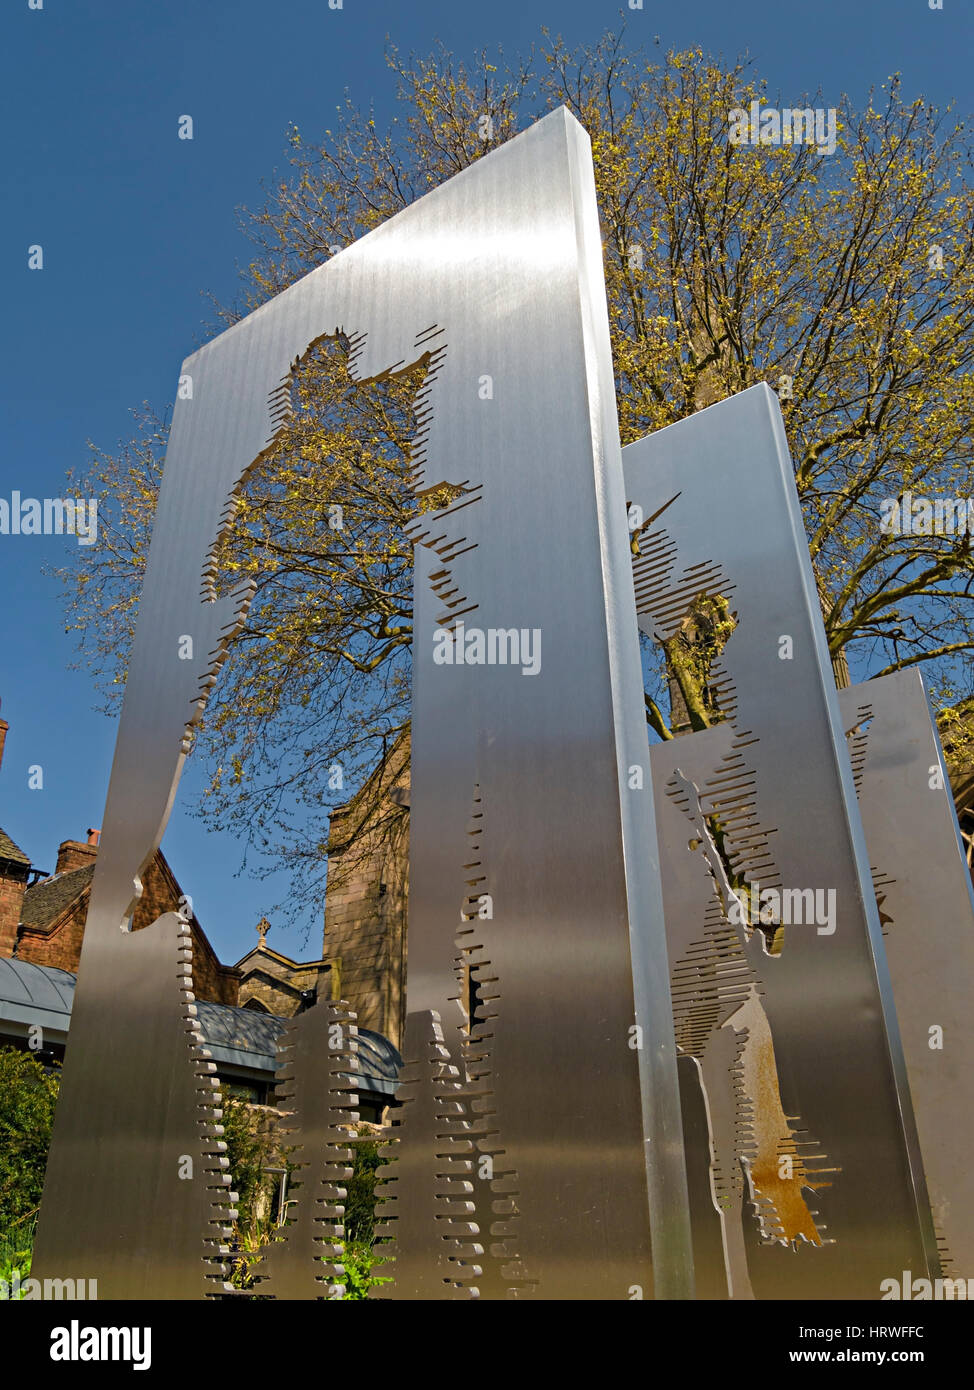 Vers l'immobilité - moderne le roi Richard iii sculpture en acier par dallas pierce quintero architectes, cathédrale de Leicester, Leicester, England, UK Banque D'Images